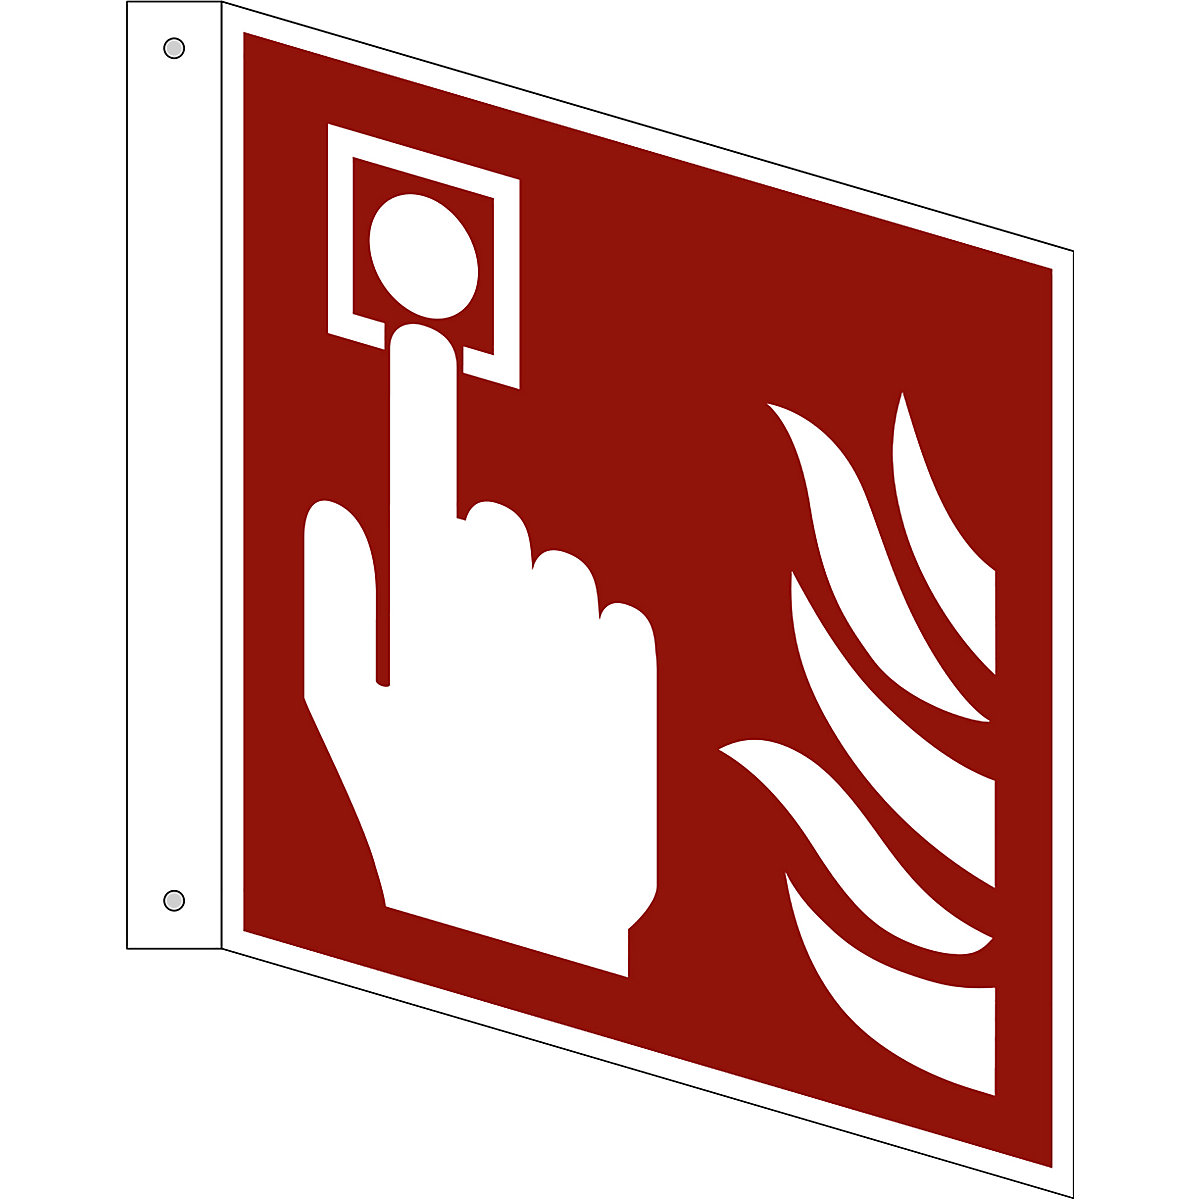 Značka pro ochranu proti požáru, požární hlásič, bal.j. 10 ks, hliník, vlajkový štítek, 200 x 200 mm